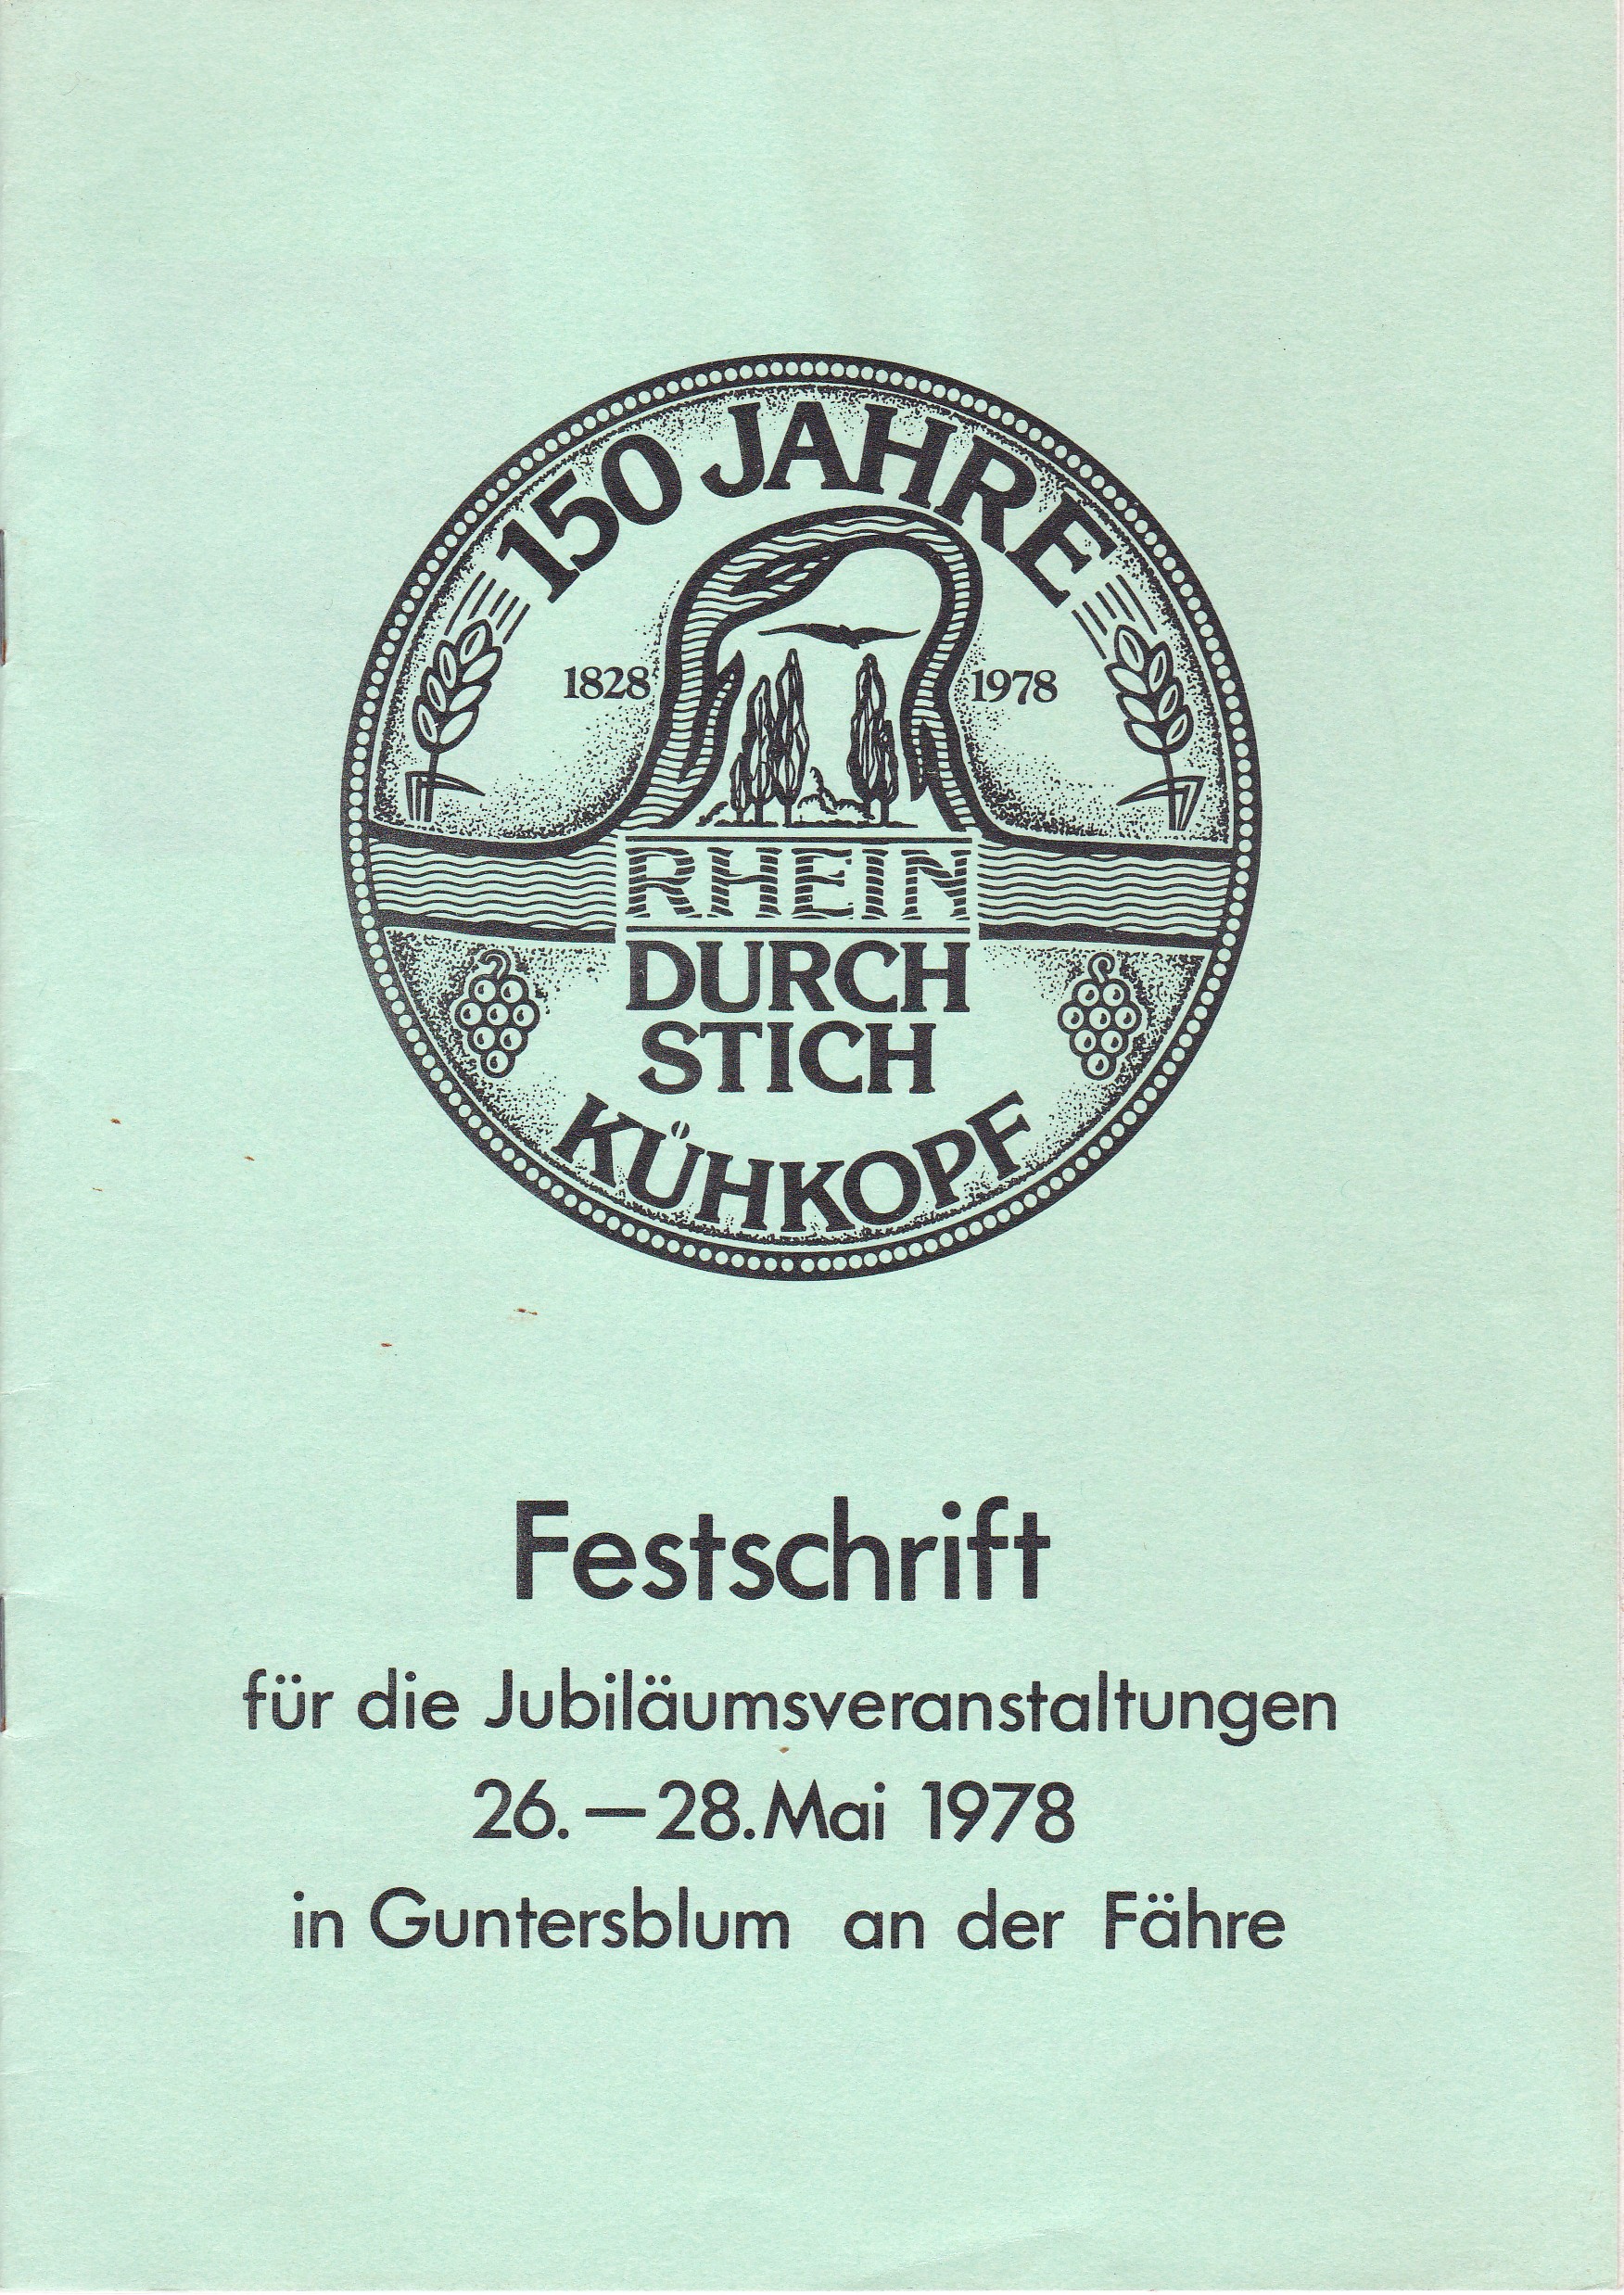 150 Jahre Rheindurchstich Kühkopf Festschrift (Museum Guntersblum  im Kellerweg 20 CC BY-NC-SA)